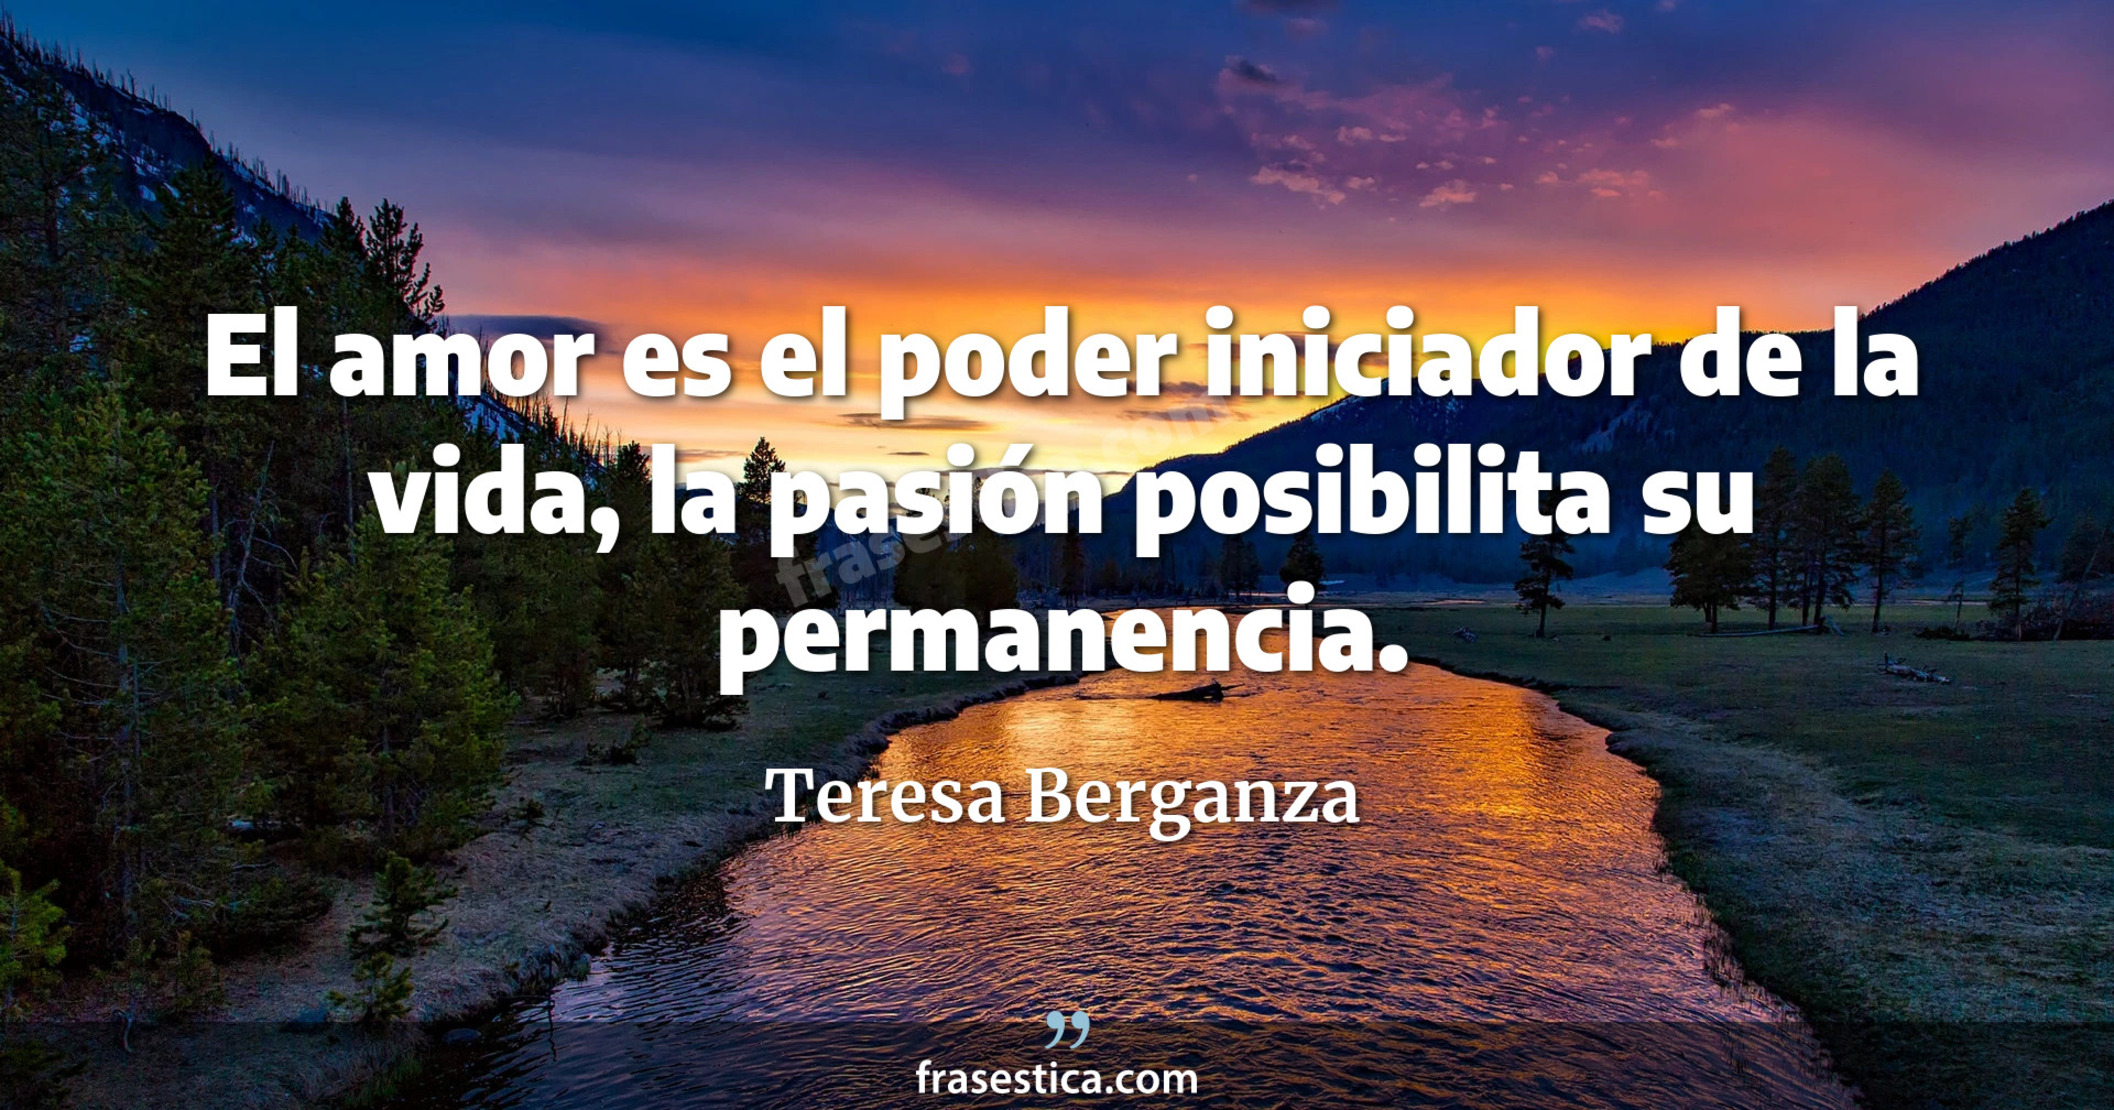 El amor es el poder iniciador de la vida, la pasión posibilita su permanencia. - Teresa Berganza